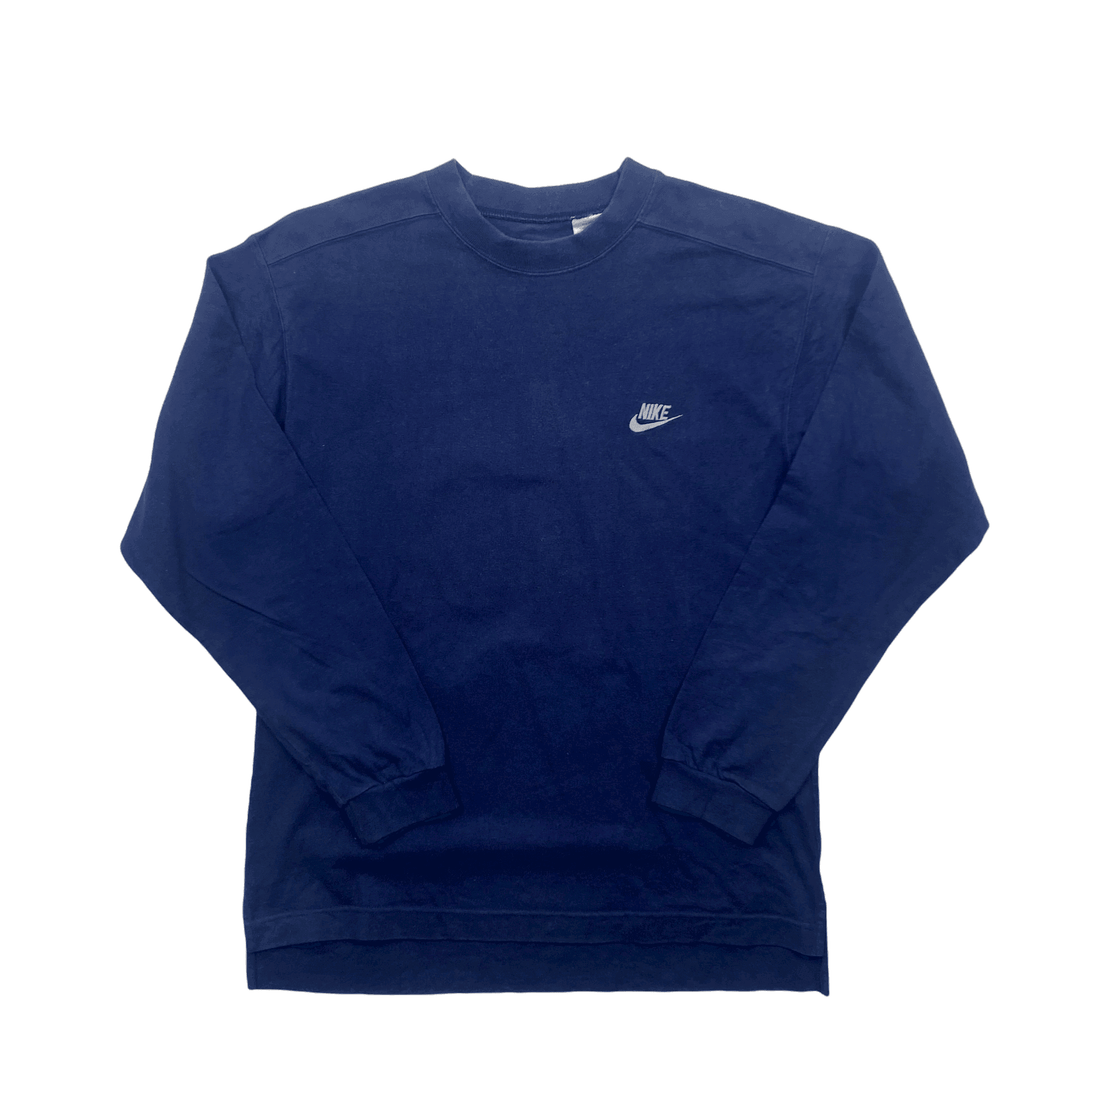 Vintage 90s Navy Blue Nike Sweatshirt - Medium - The Streetwear Studio